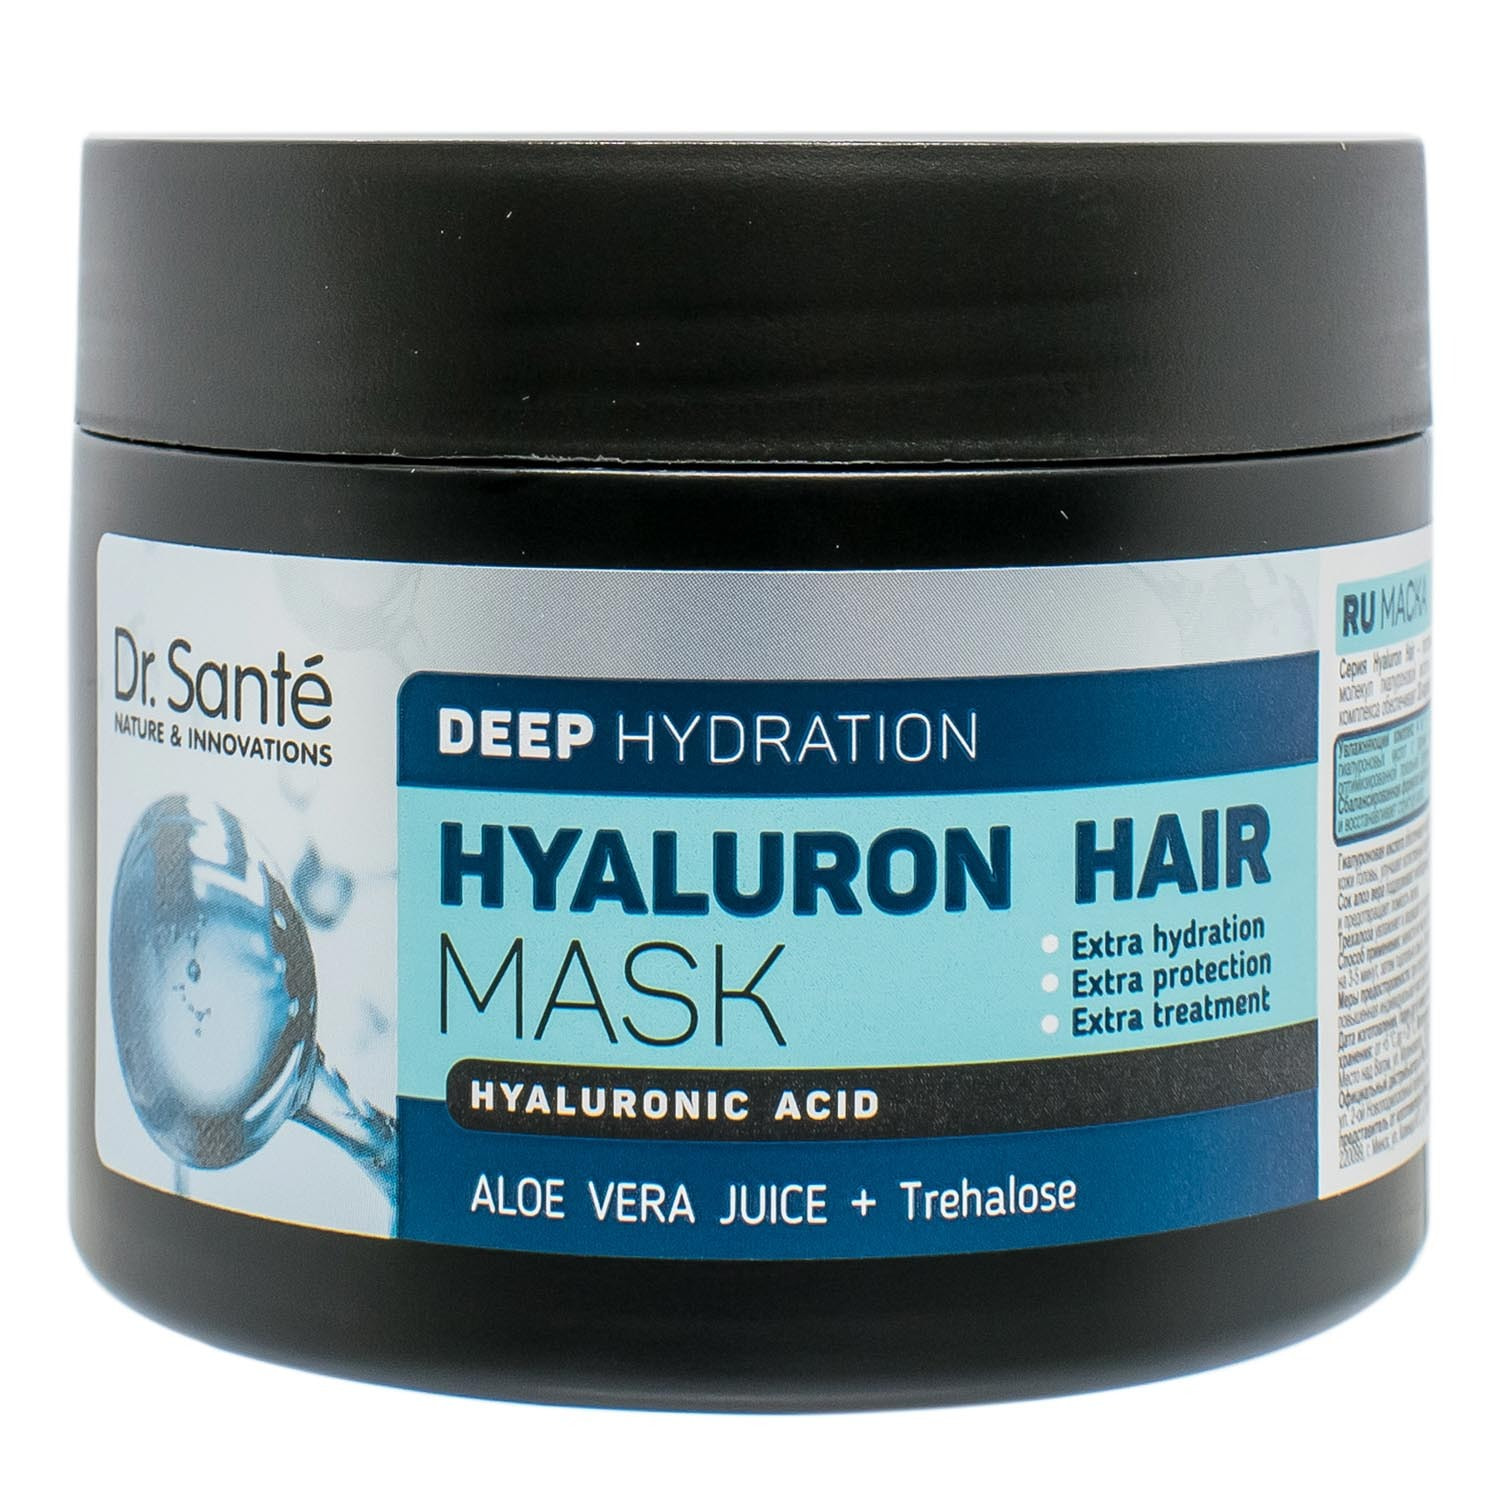 Маска для волос dr. Dr sante Hyaluron маска. Dr.sante маска для волос Hyaluron hair, 300 мл. Deep Hydration маска для волос. Доктор Санте маска для волос гидра.